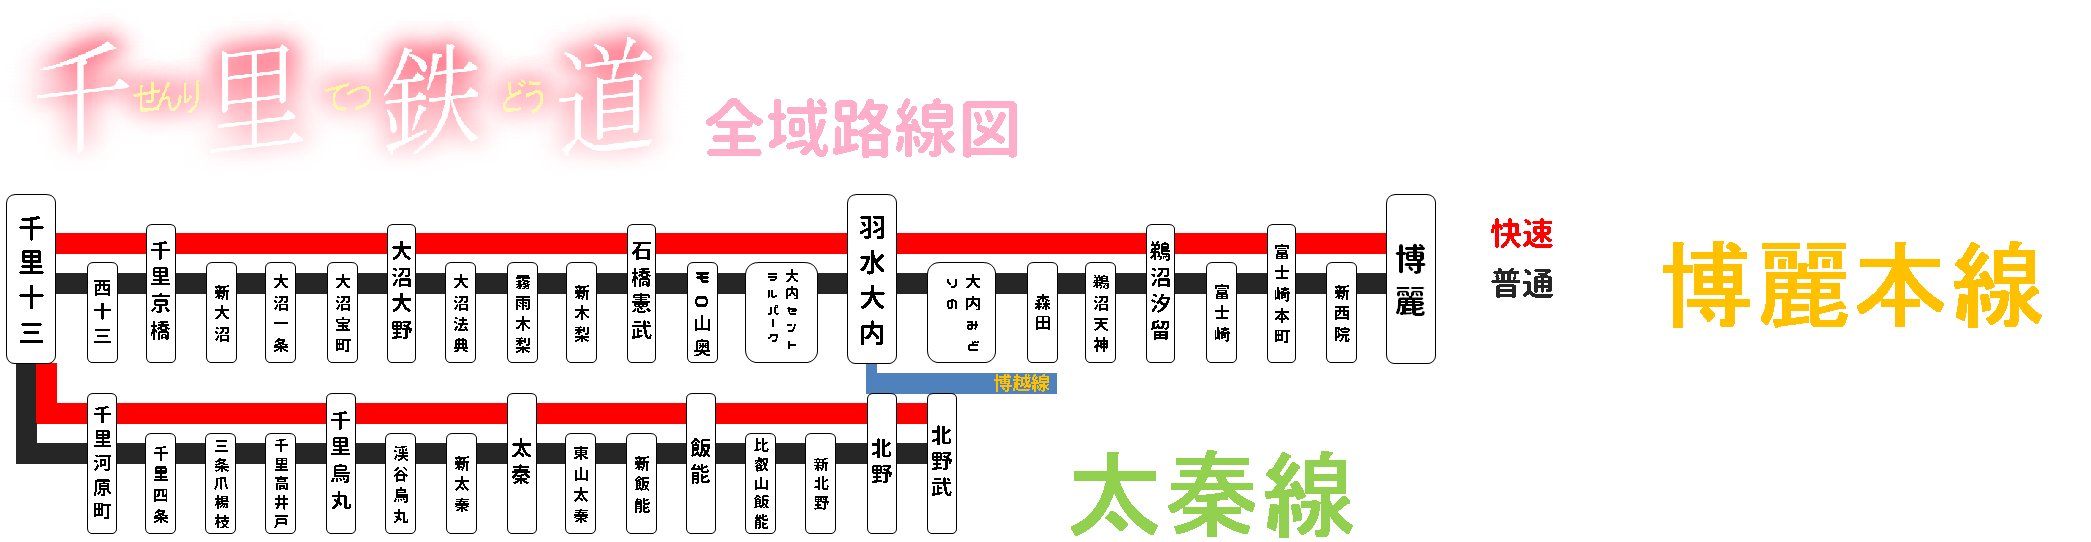 千里鉄道路線図.png